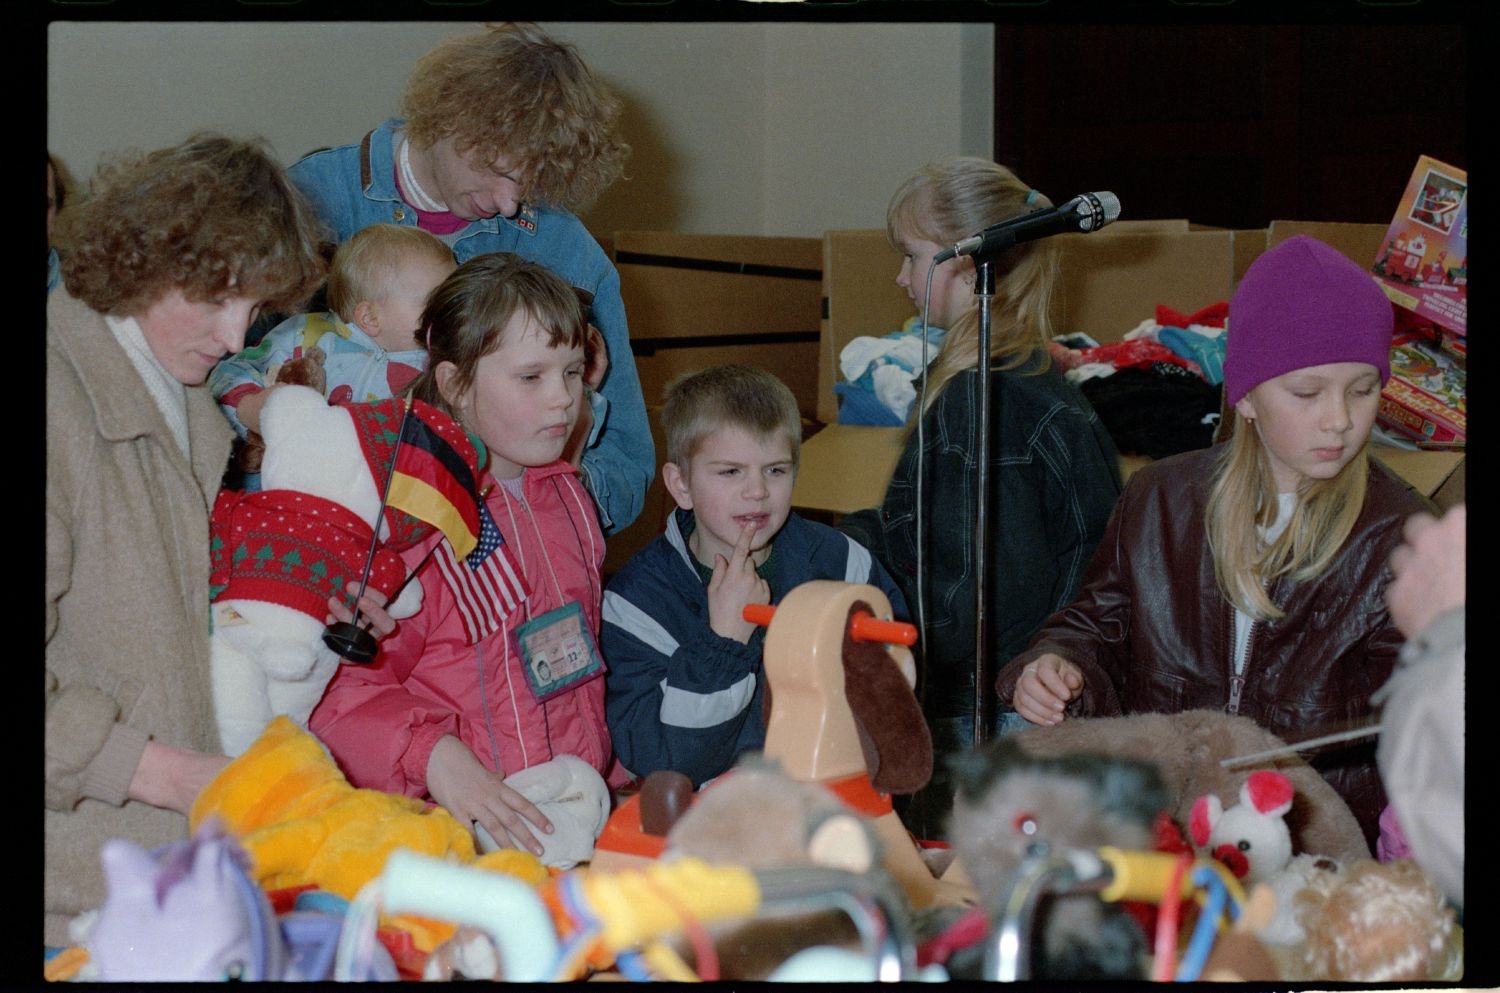 Fotografie: Übergabe von Spielzeugspenden für Kinder aus der DDR im Notaufnahmelager Berlin-Marienfelde (AlliiertenMuseum/U.S. Army Photograph Public Domain Mark)